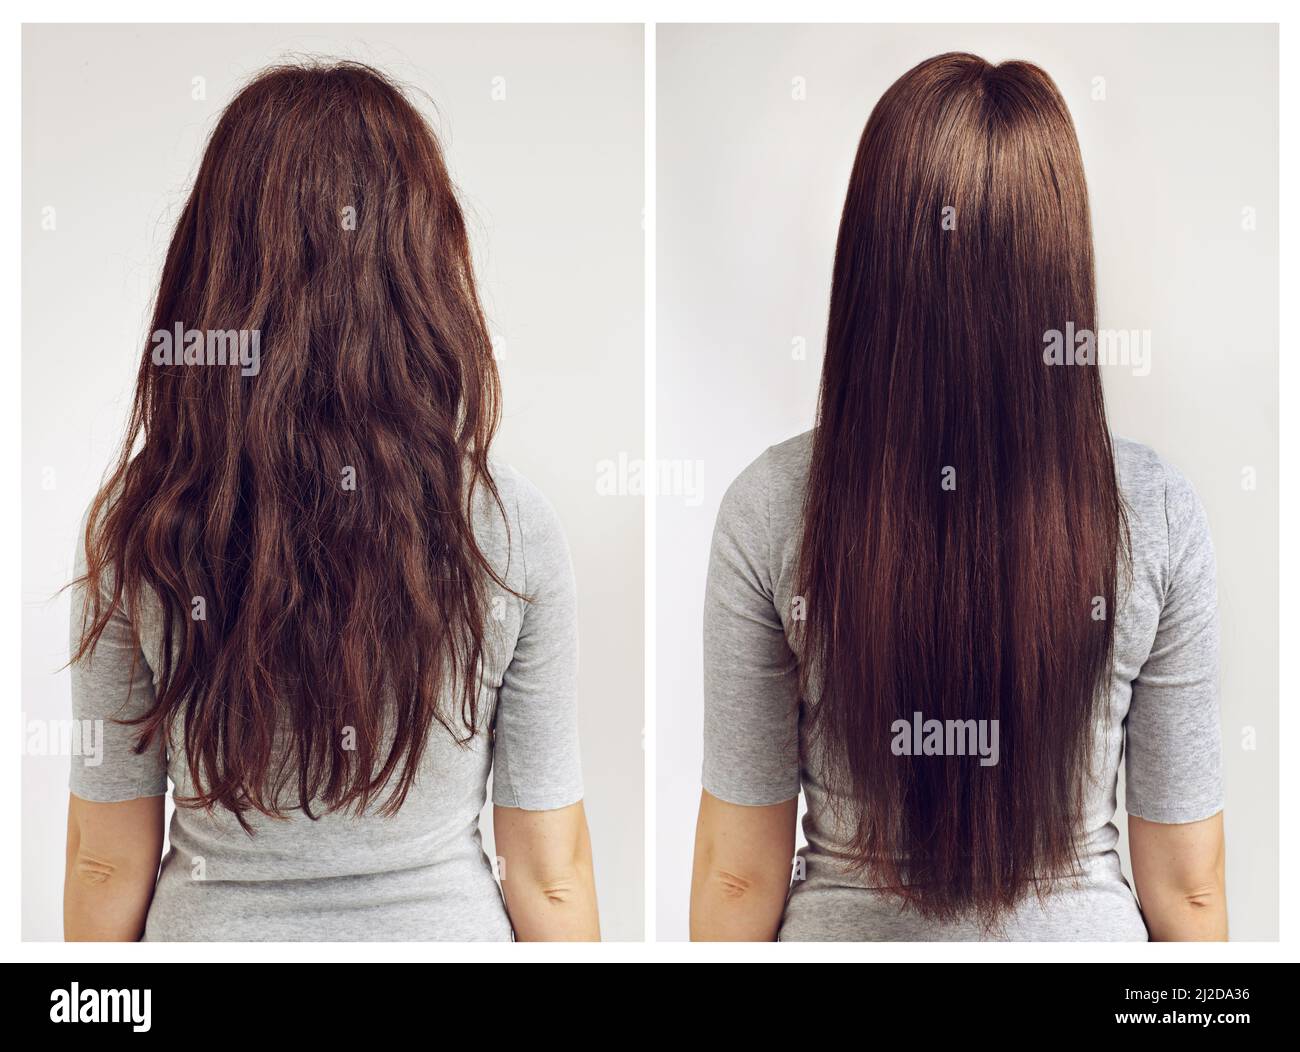 Droit ou bouclés. Avant et après la prise de vue d'une femme avec des cheveux bouclés et droits. Banque D'Images